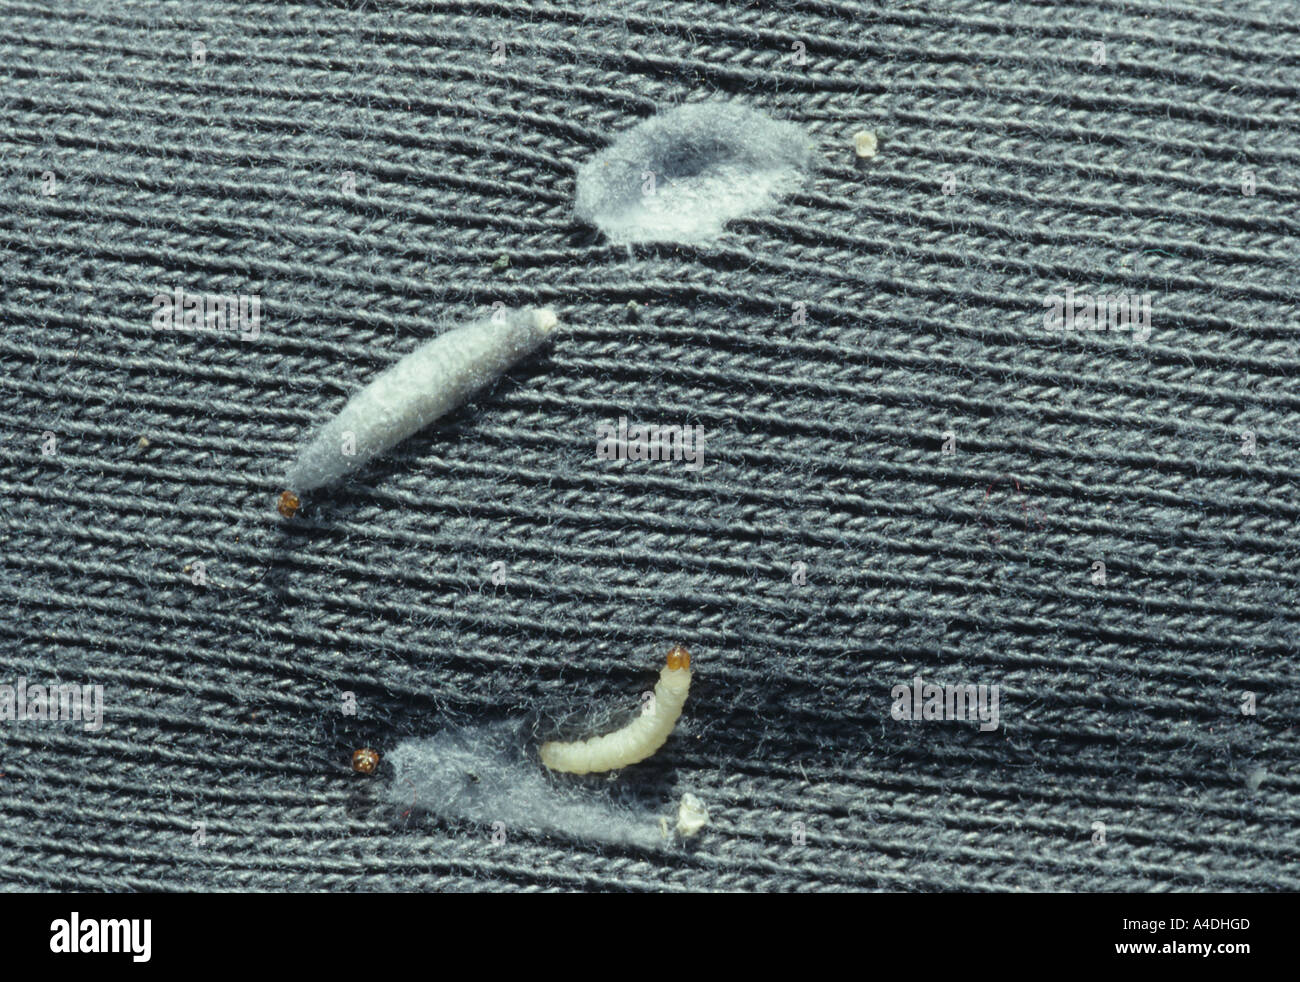 Kleider Motten Larven, Tineola Bisselliella, mit seidenen Fällen an der Kleidung befestigt. Stockfoto